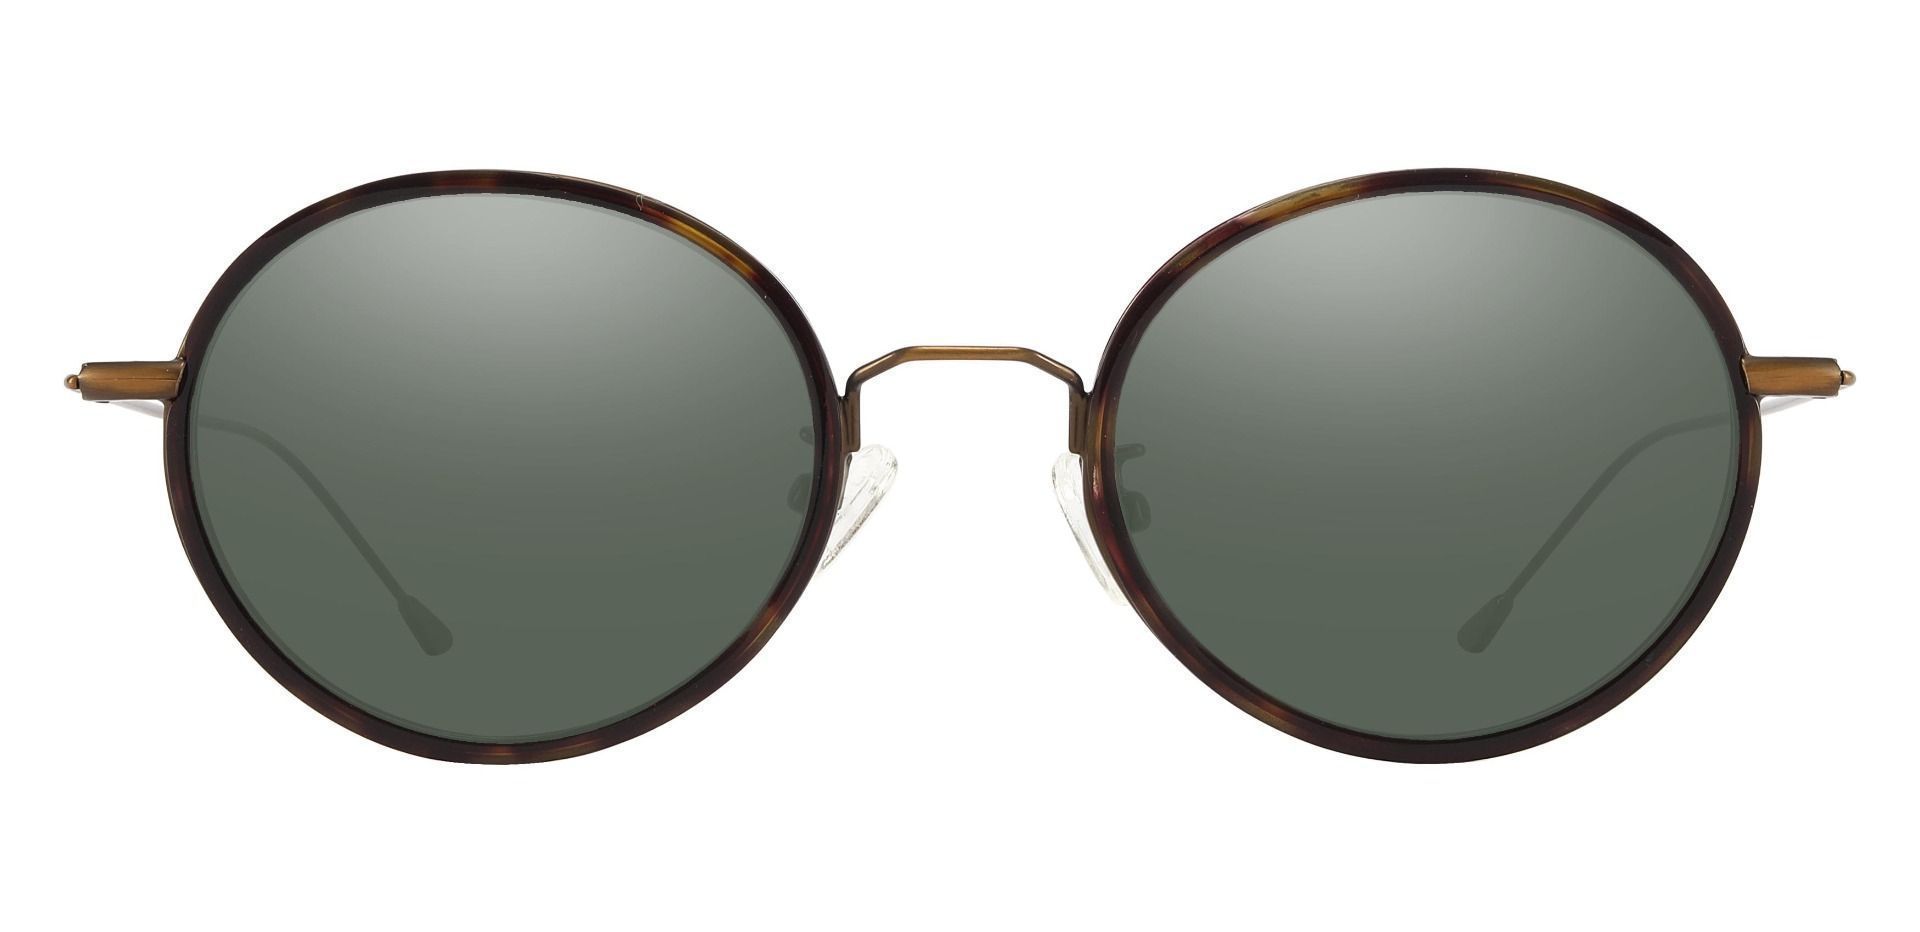 Malverne Oval Progressive Sunglasses - Tortoise Frame With Green Lenses